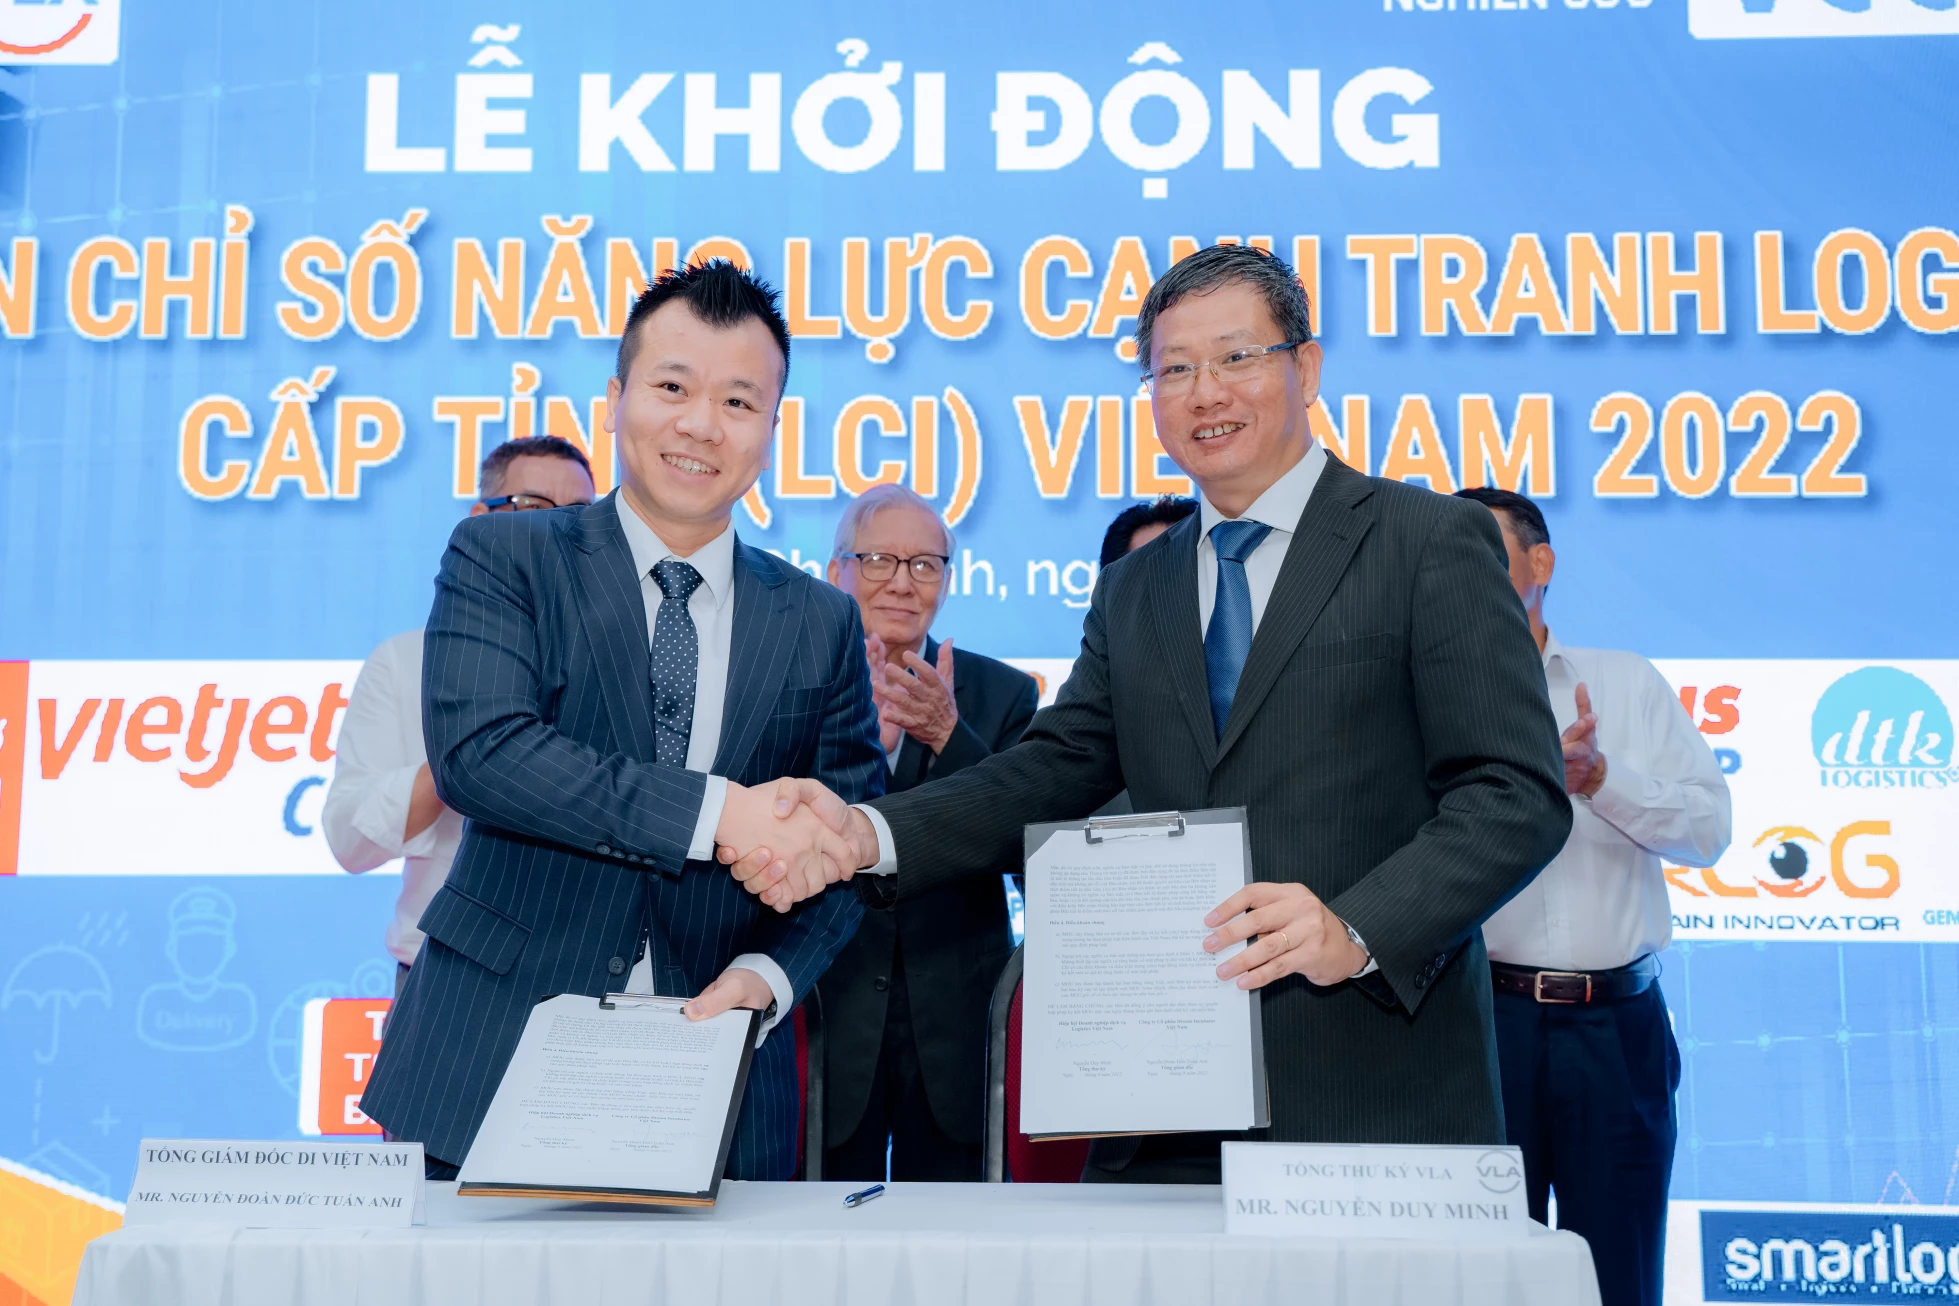 Dự án Chỉ số năng lực cạnh tranh Logistics cấp tỉnh (Logistics Competitiveness Index - LCI) Việt Nam 2022 chính thức được khởi động